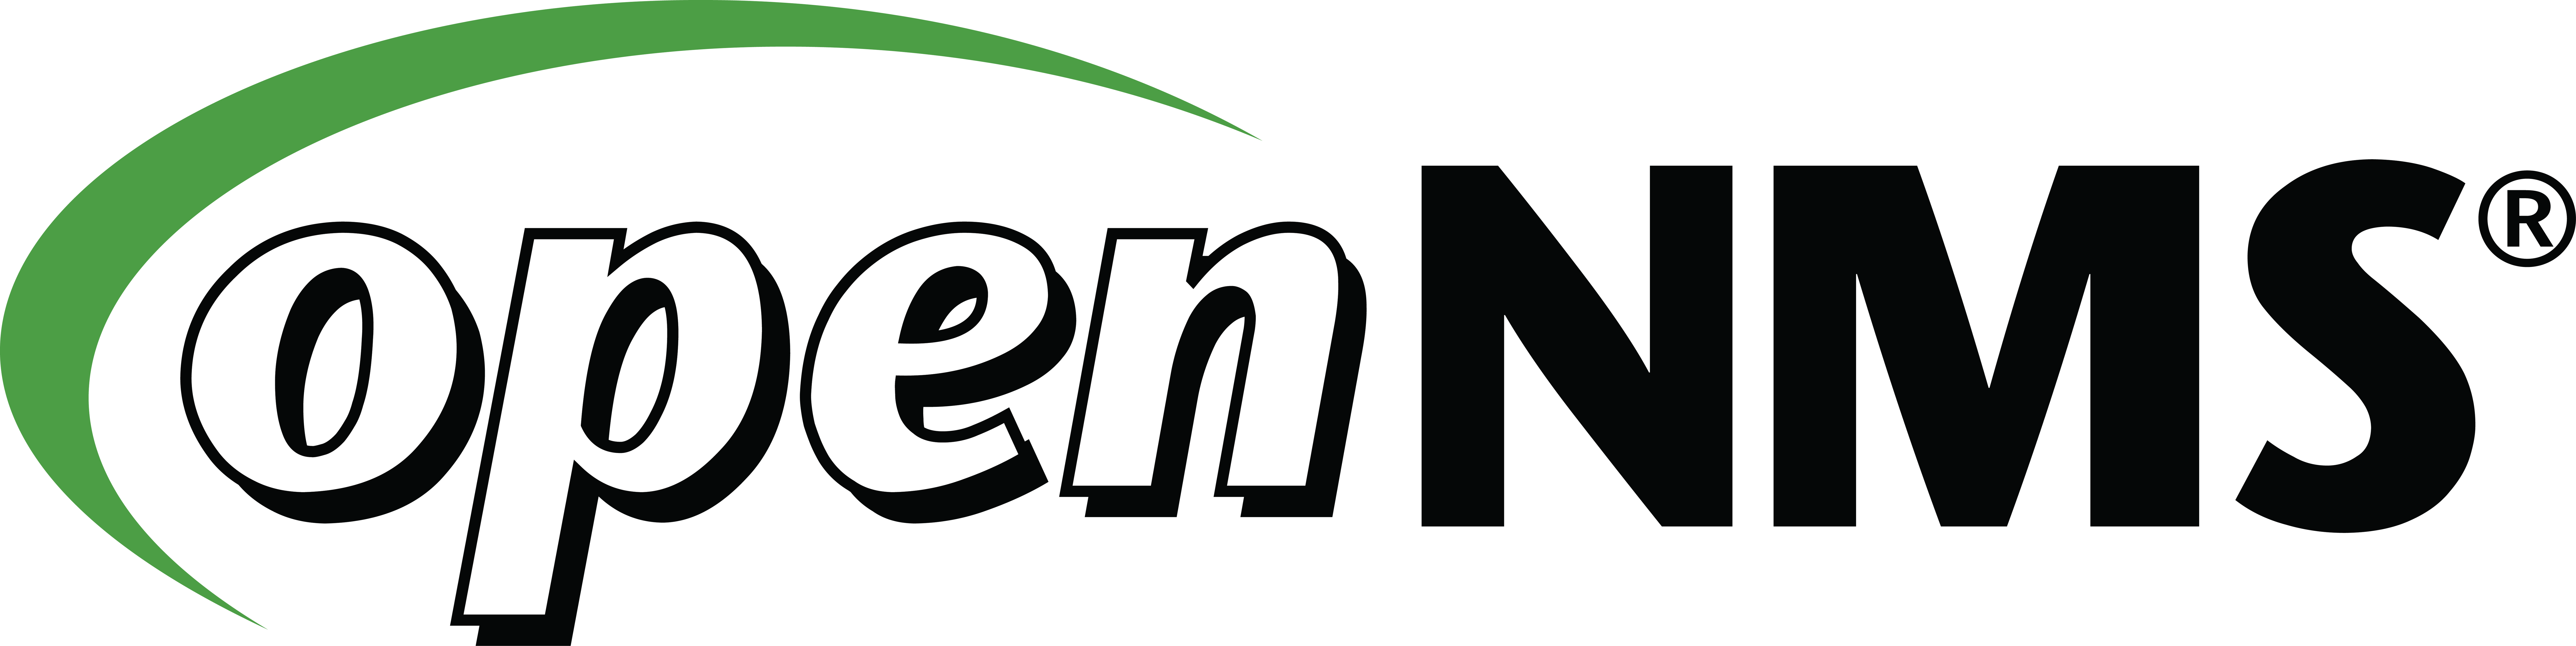 2005 to 2014 OpenNMS logo